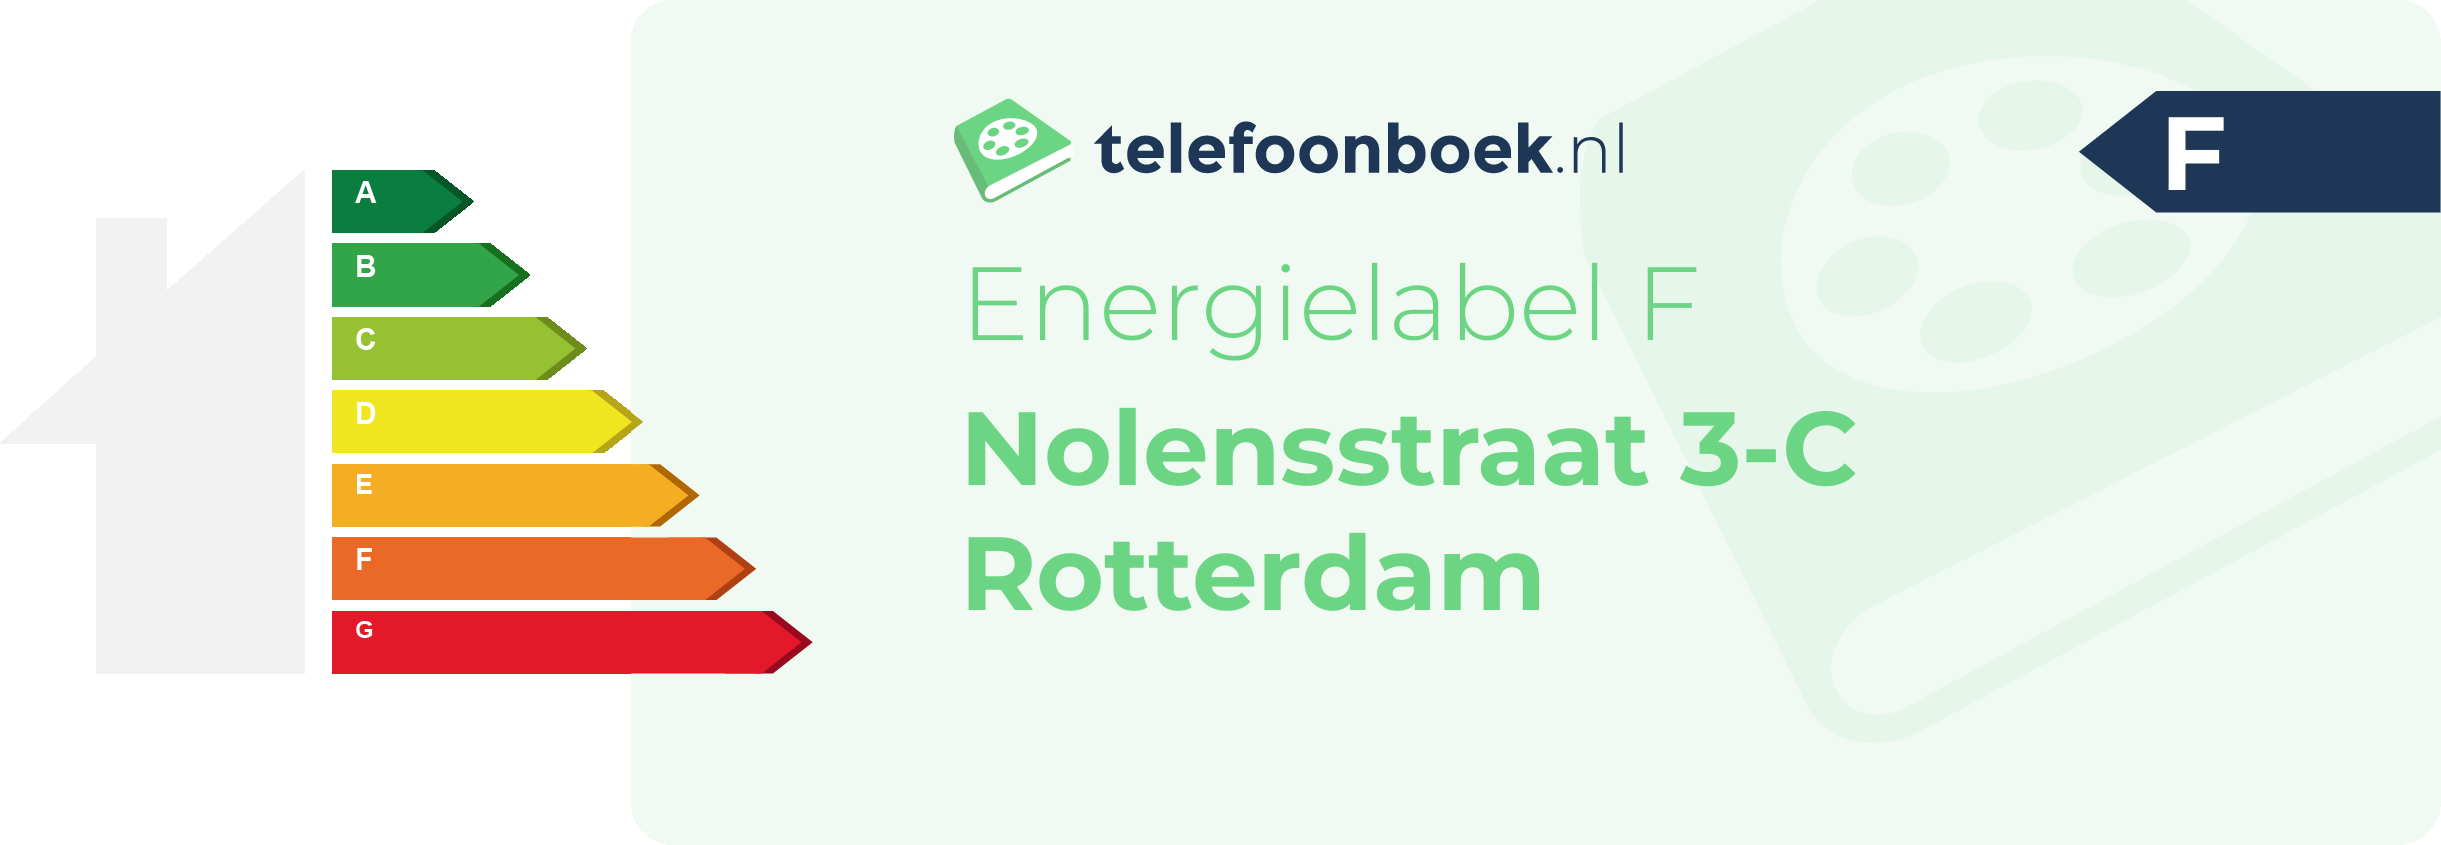 Energielabel Nolensstraat 3-C Rotterdam